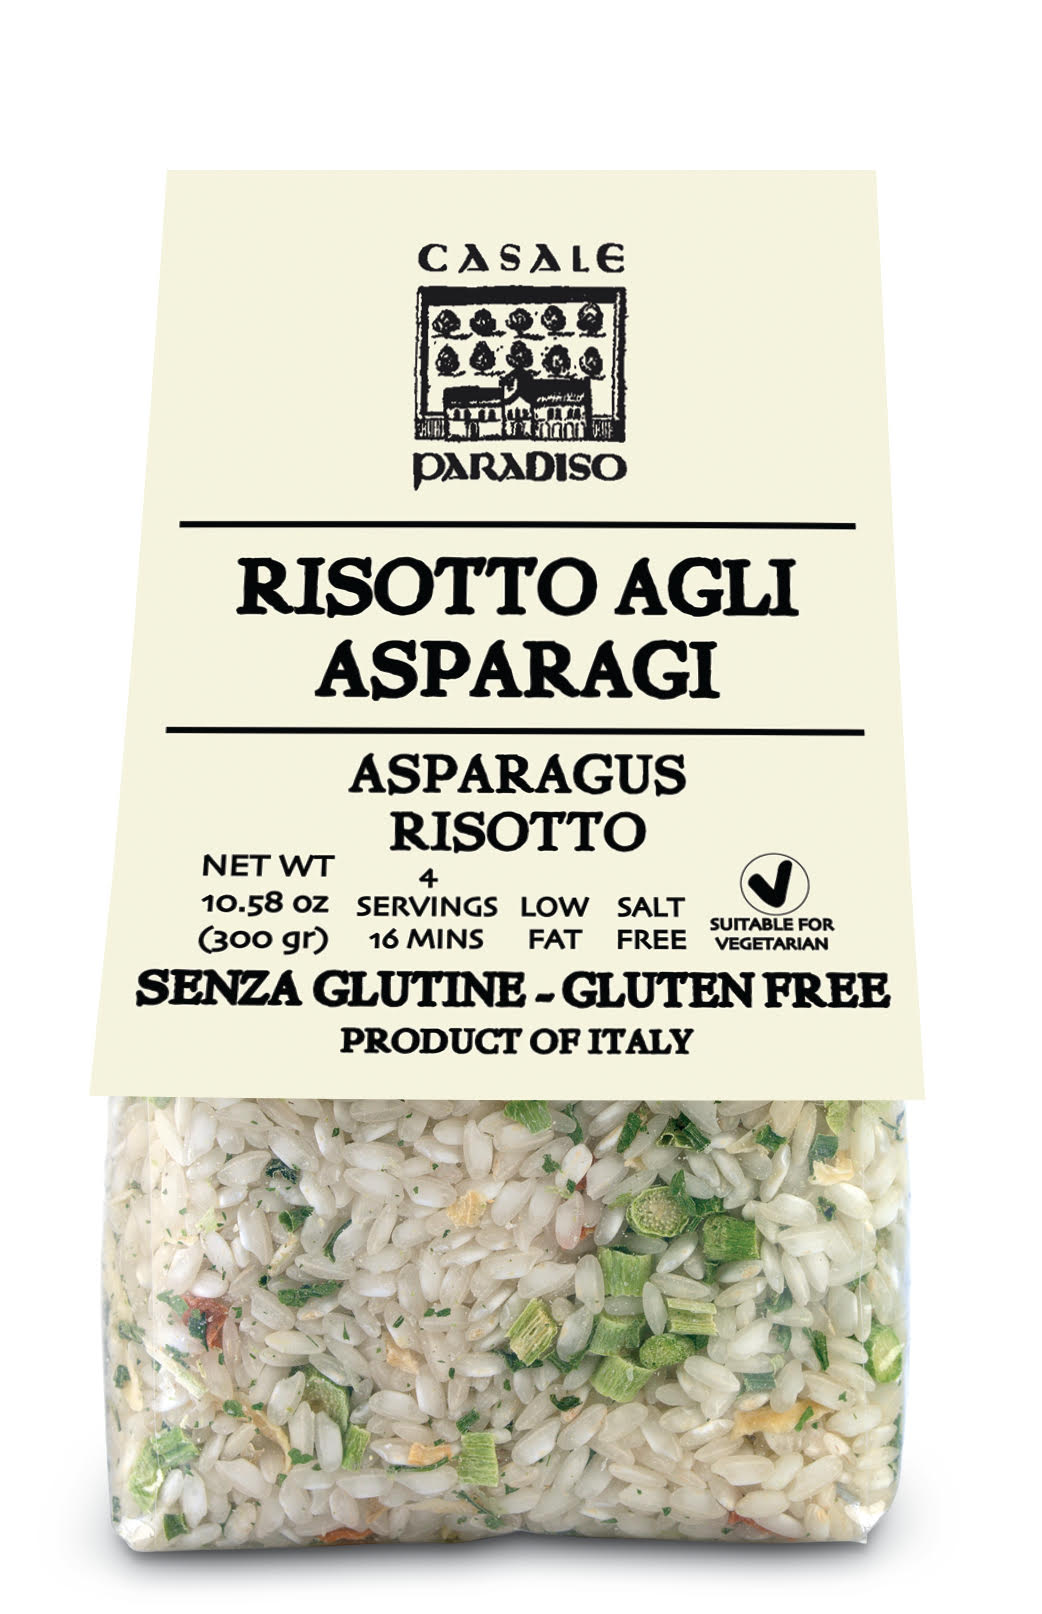 Risotto Agli Asparagi- Asparagus Risotto By Casale Paradiso